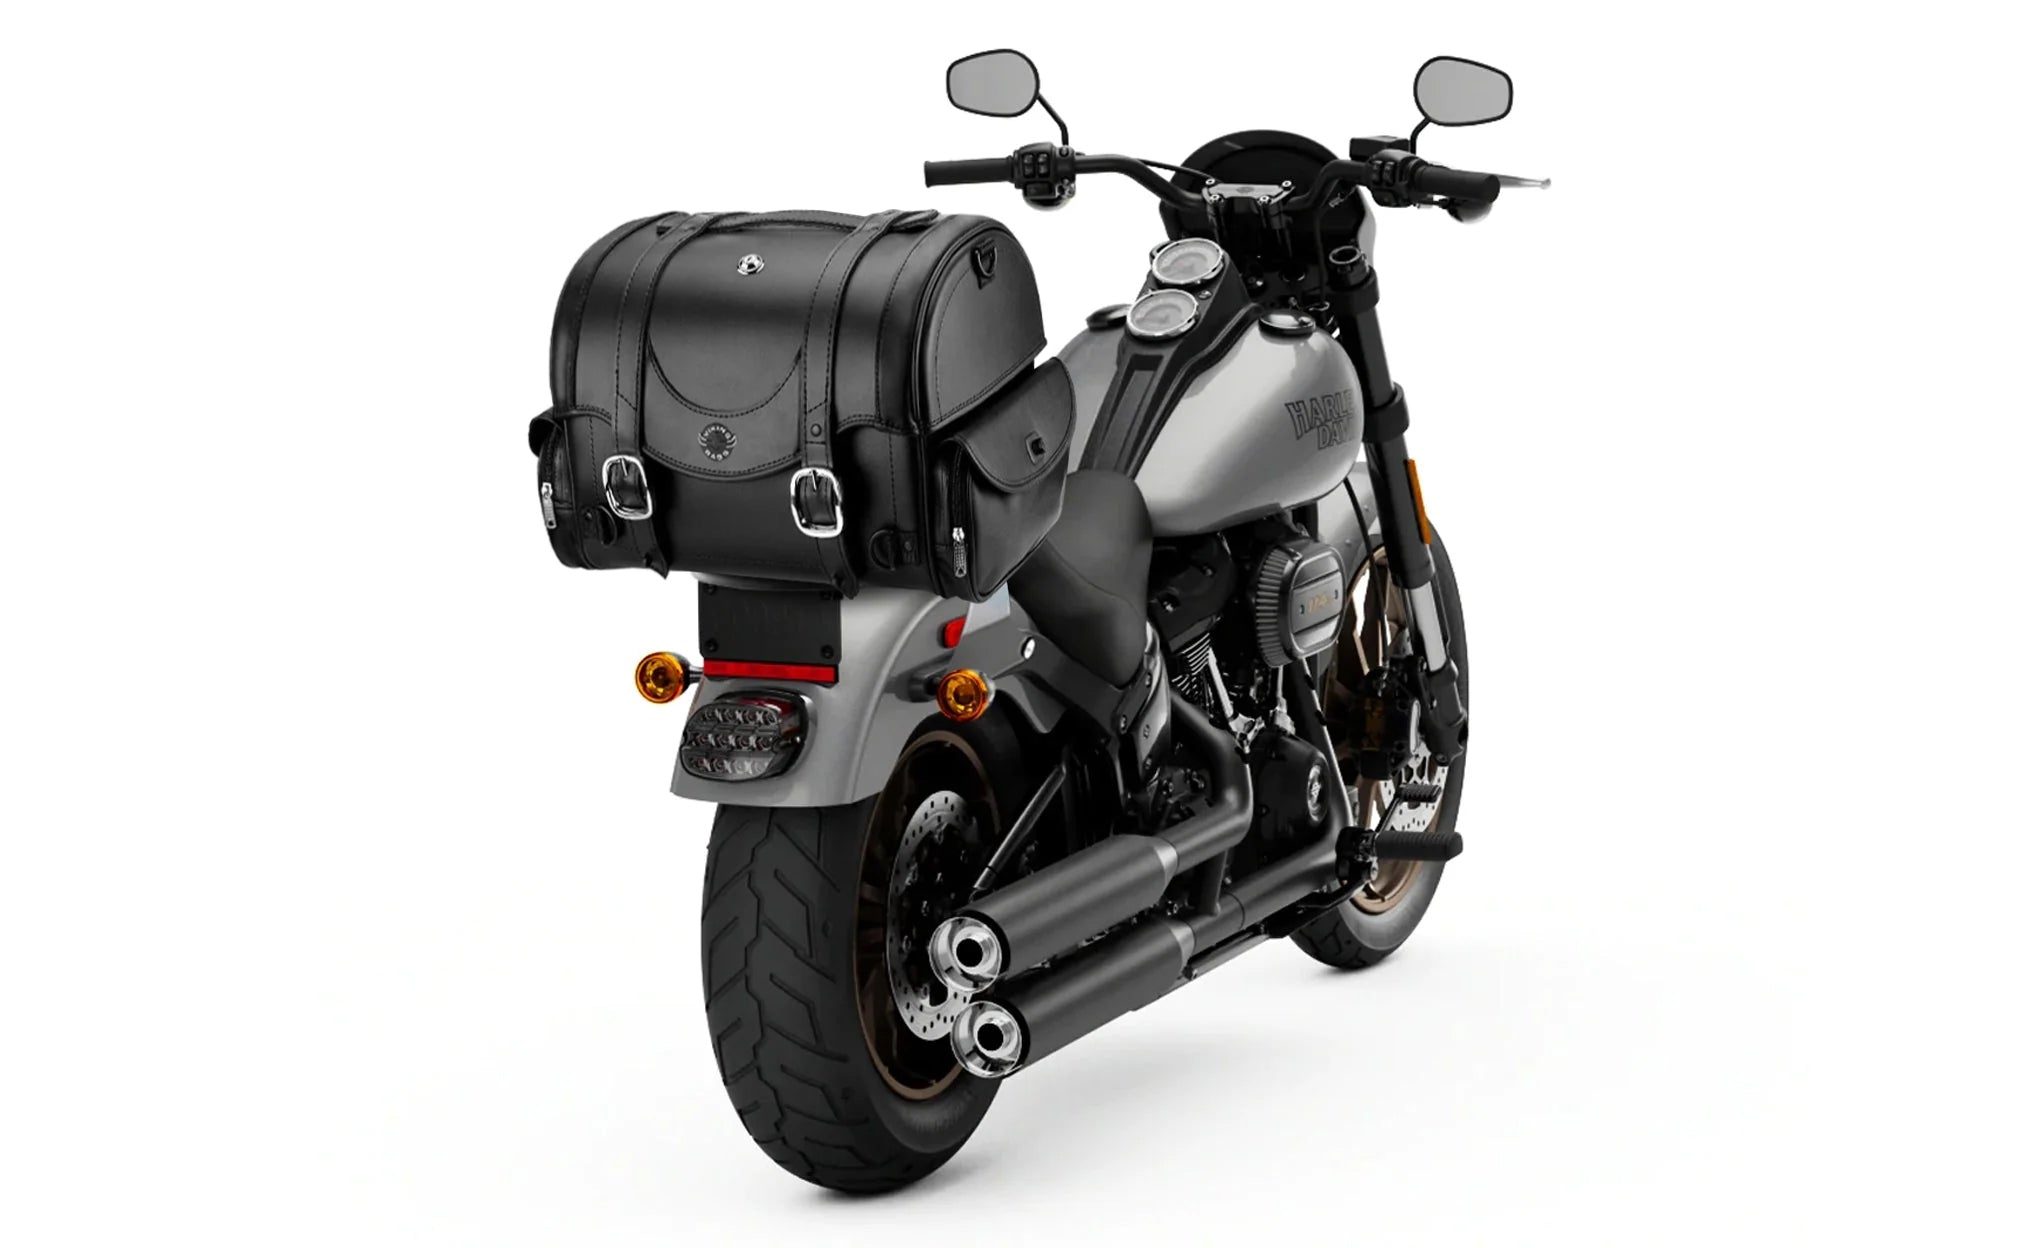 21L - Century Medium Yamaha Leather Motorcycle Tail Bag on Bike Photo @expand